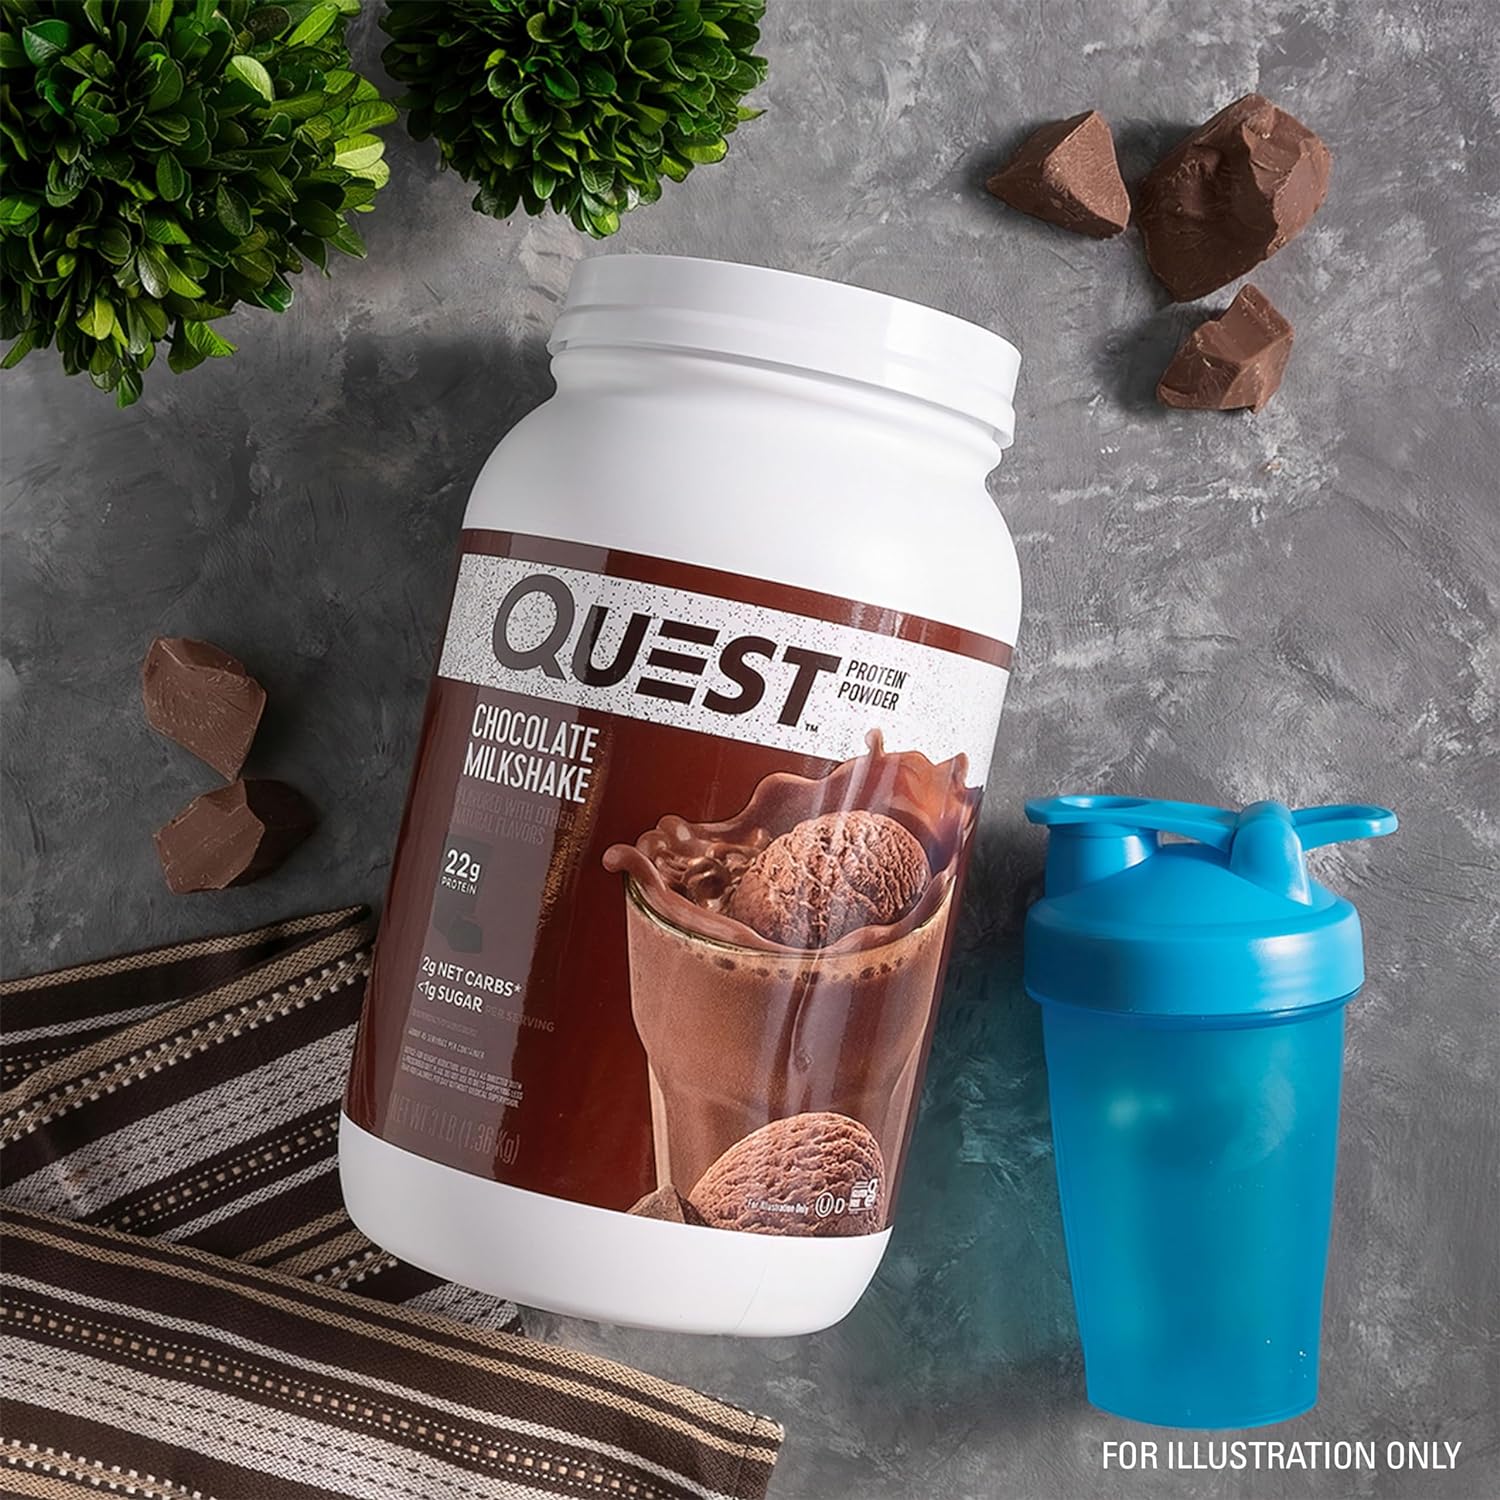 Quest Nutrition Chocolate Milkshake Protein Powder, 22g Protein, 1g Su